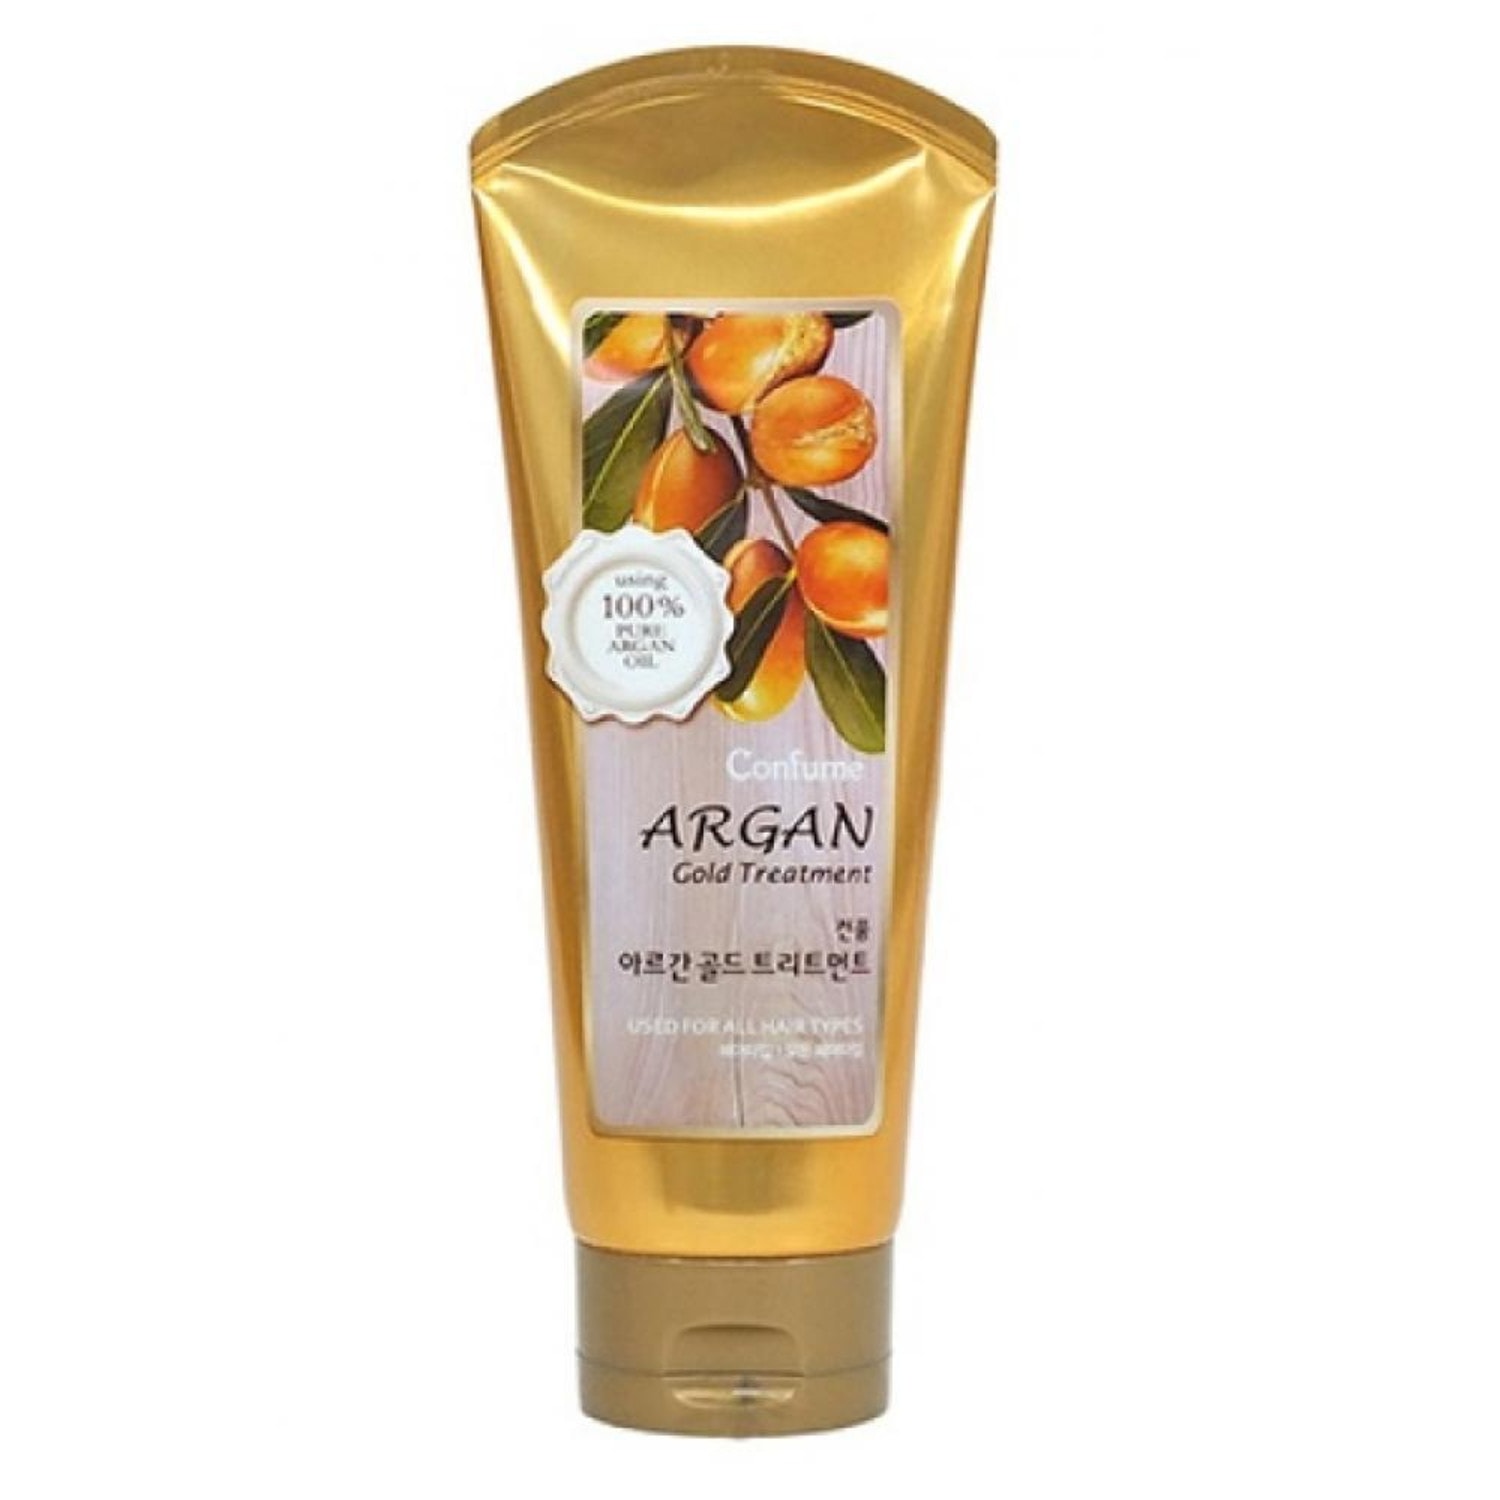 WELCOS Confume Argan Gold Treatment маска для волос с аргановым маслом, 200 г / 014256